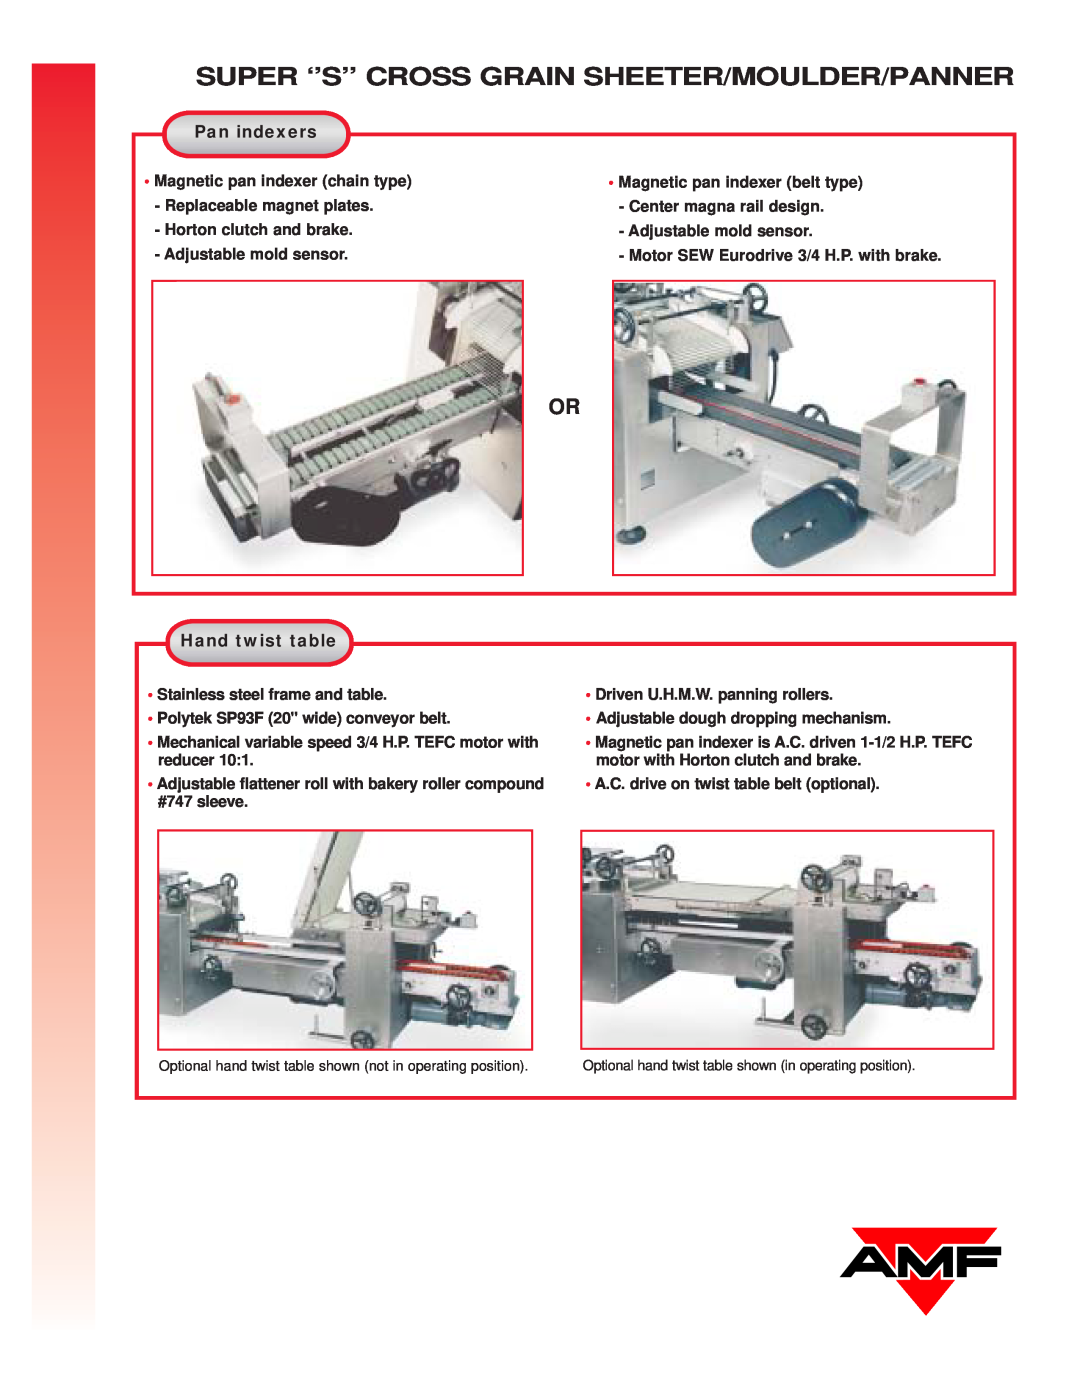 AMF Super Cross Grain Sheeter manual Pan indexers, Hand twist table, Super ‘’S’’ Cross Grain Sheeter/Moulder/Panner 